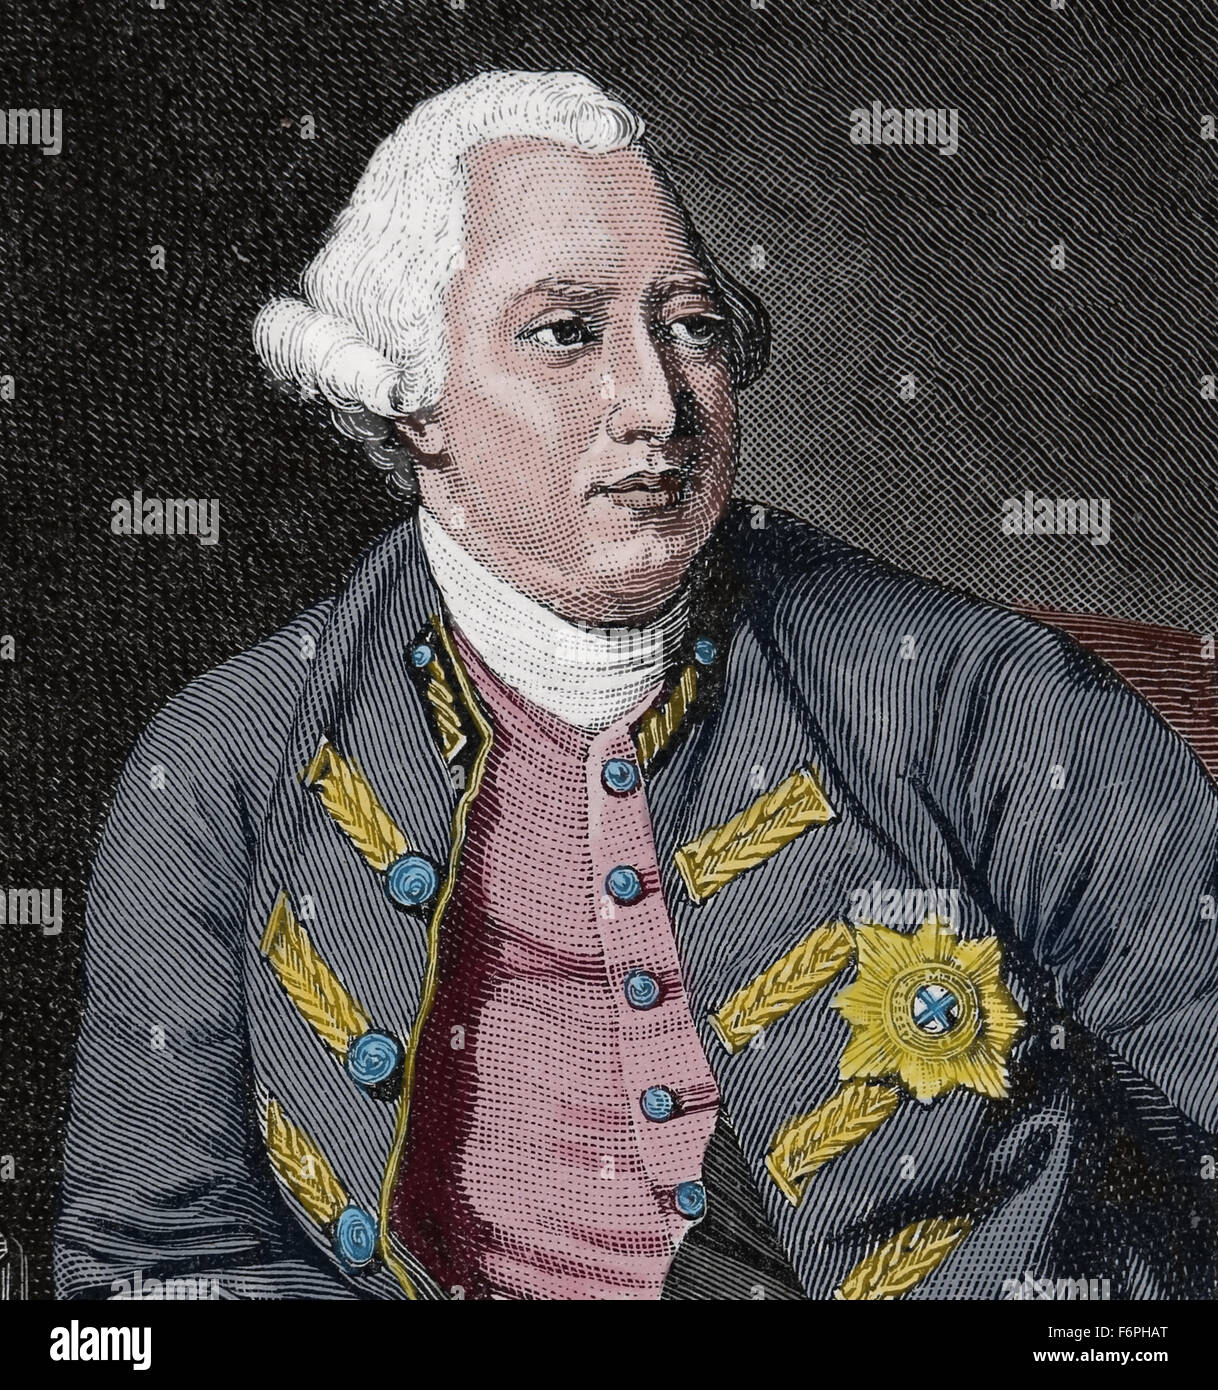 George III des Vereinigten Königreichs (1738-1820). König von Großbritannien und Irland. Haus von Hannover. Porträt. Gravur. Farbige. Stockfoto